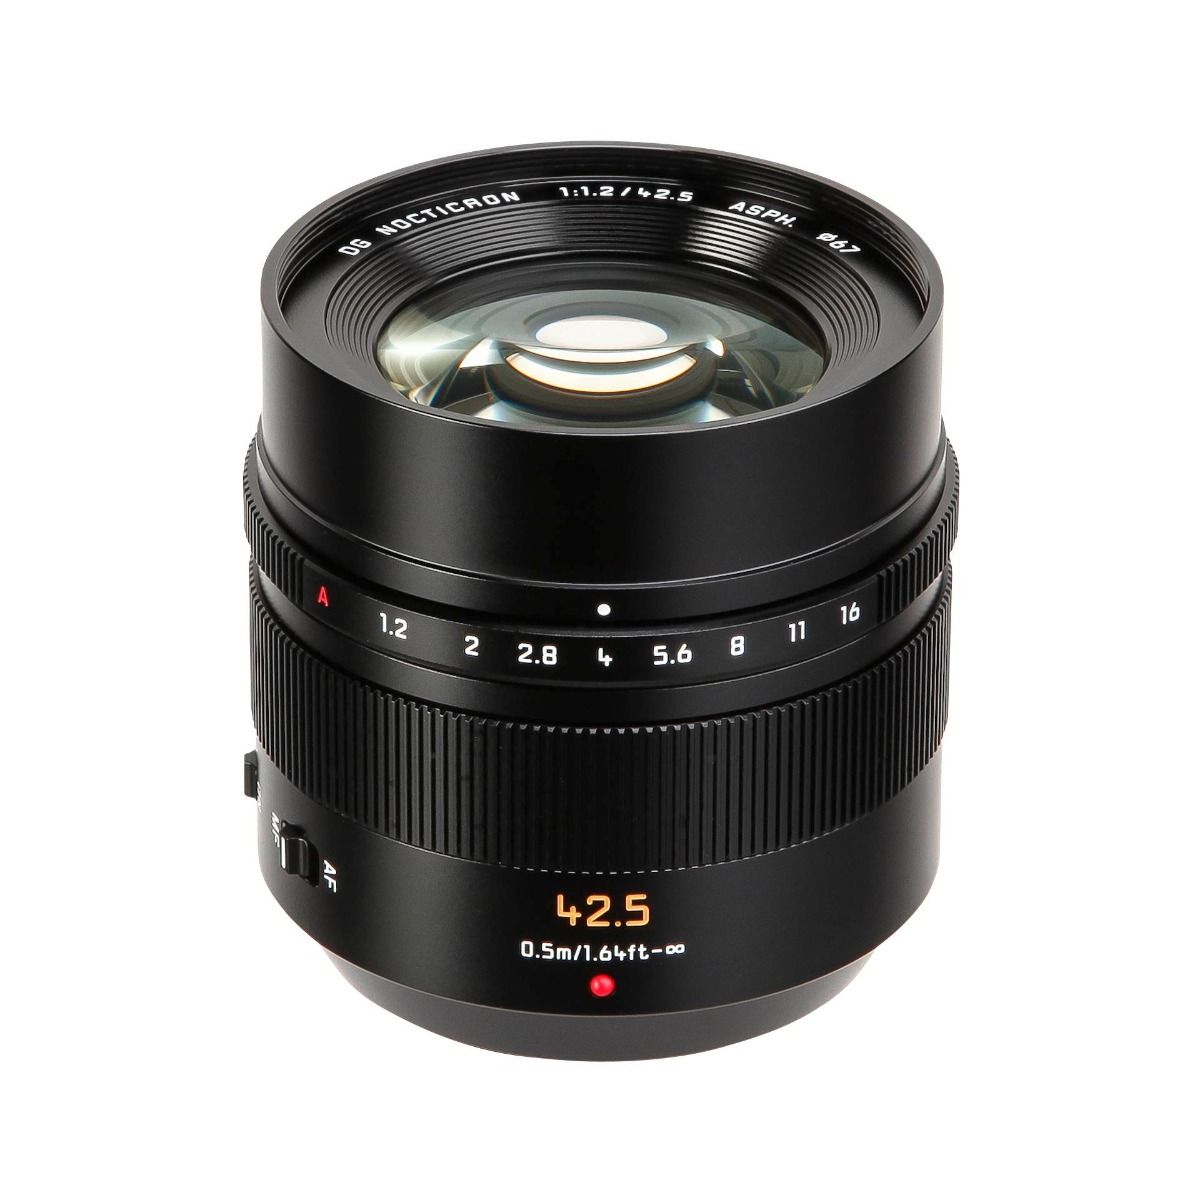 Panasonic 42.5mm f1.2 ASPH Leica DG Nocticron OIS Lens Micro Four Thirds Mount